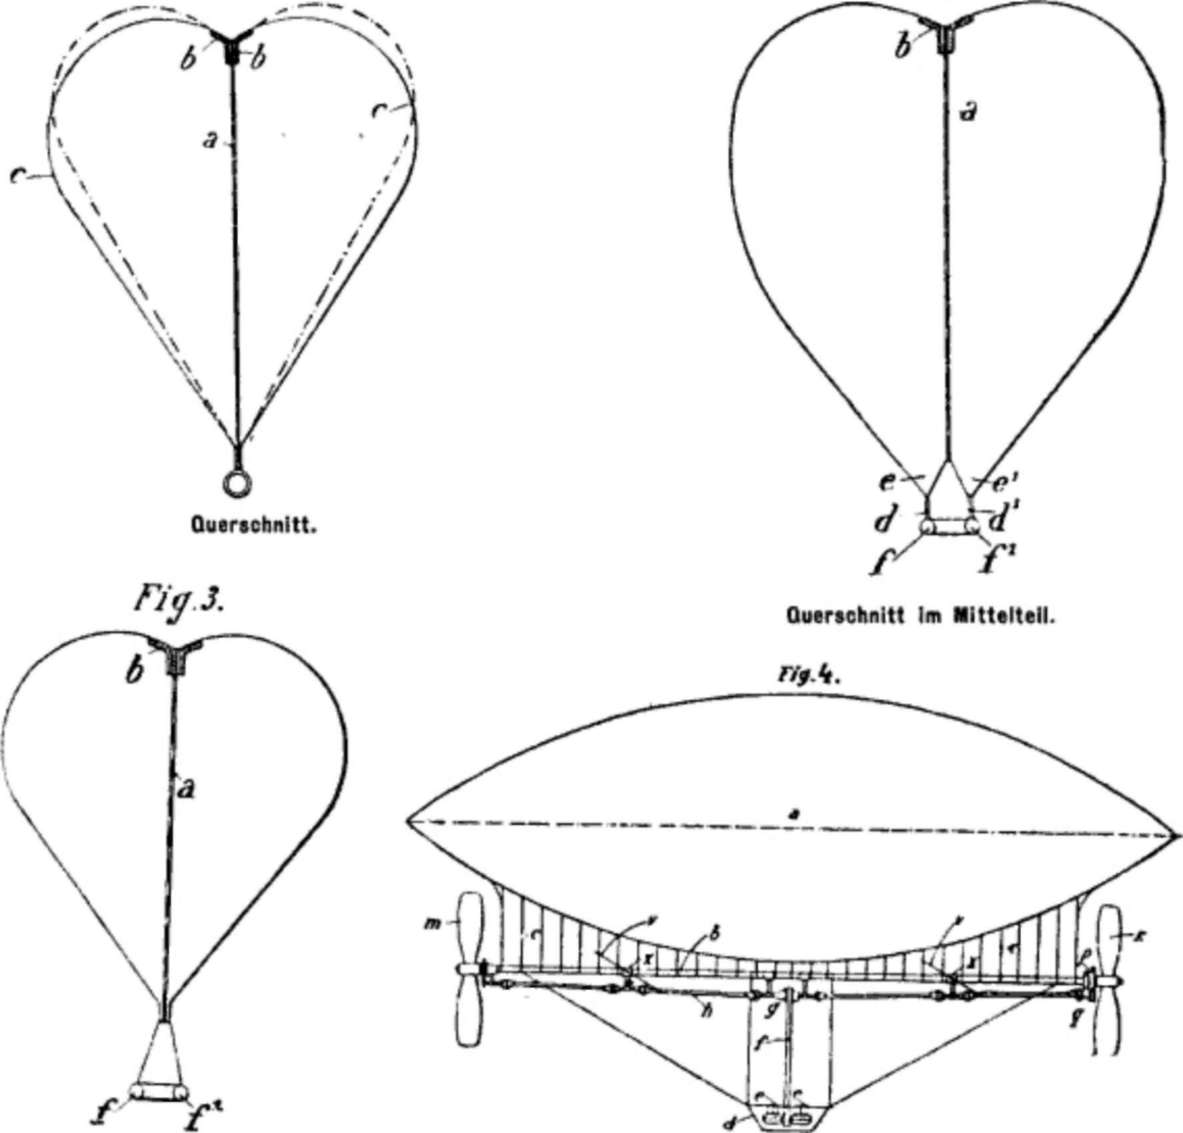 Luftschiffe - Ballonfahrten - Zeppeline - Aeronautik - Aviation - Geschichte der Luftfahrt 1903